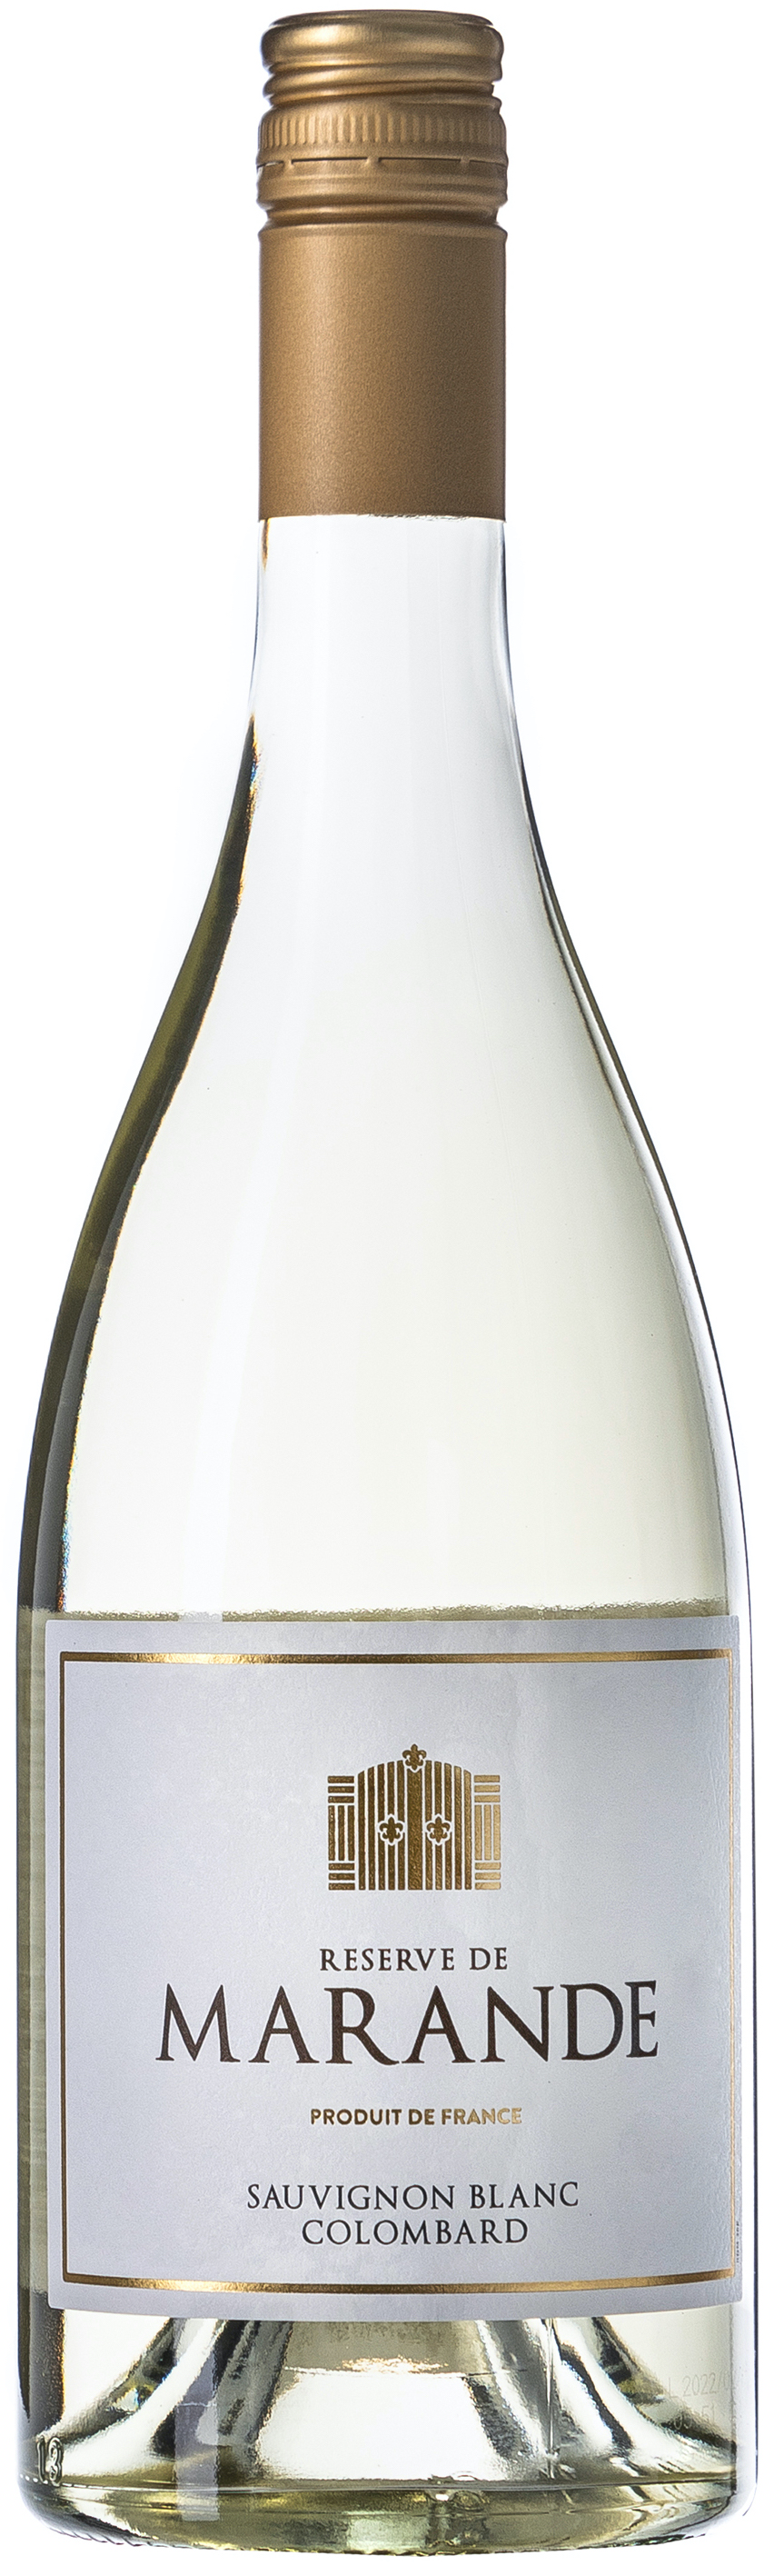 Reserve de Marande Sauvignon Blanc Colombard 11% vol. 0,75L